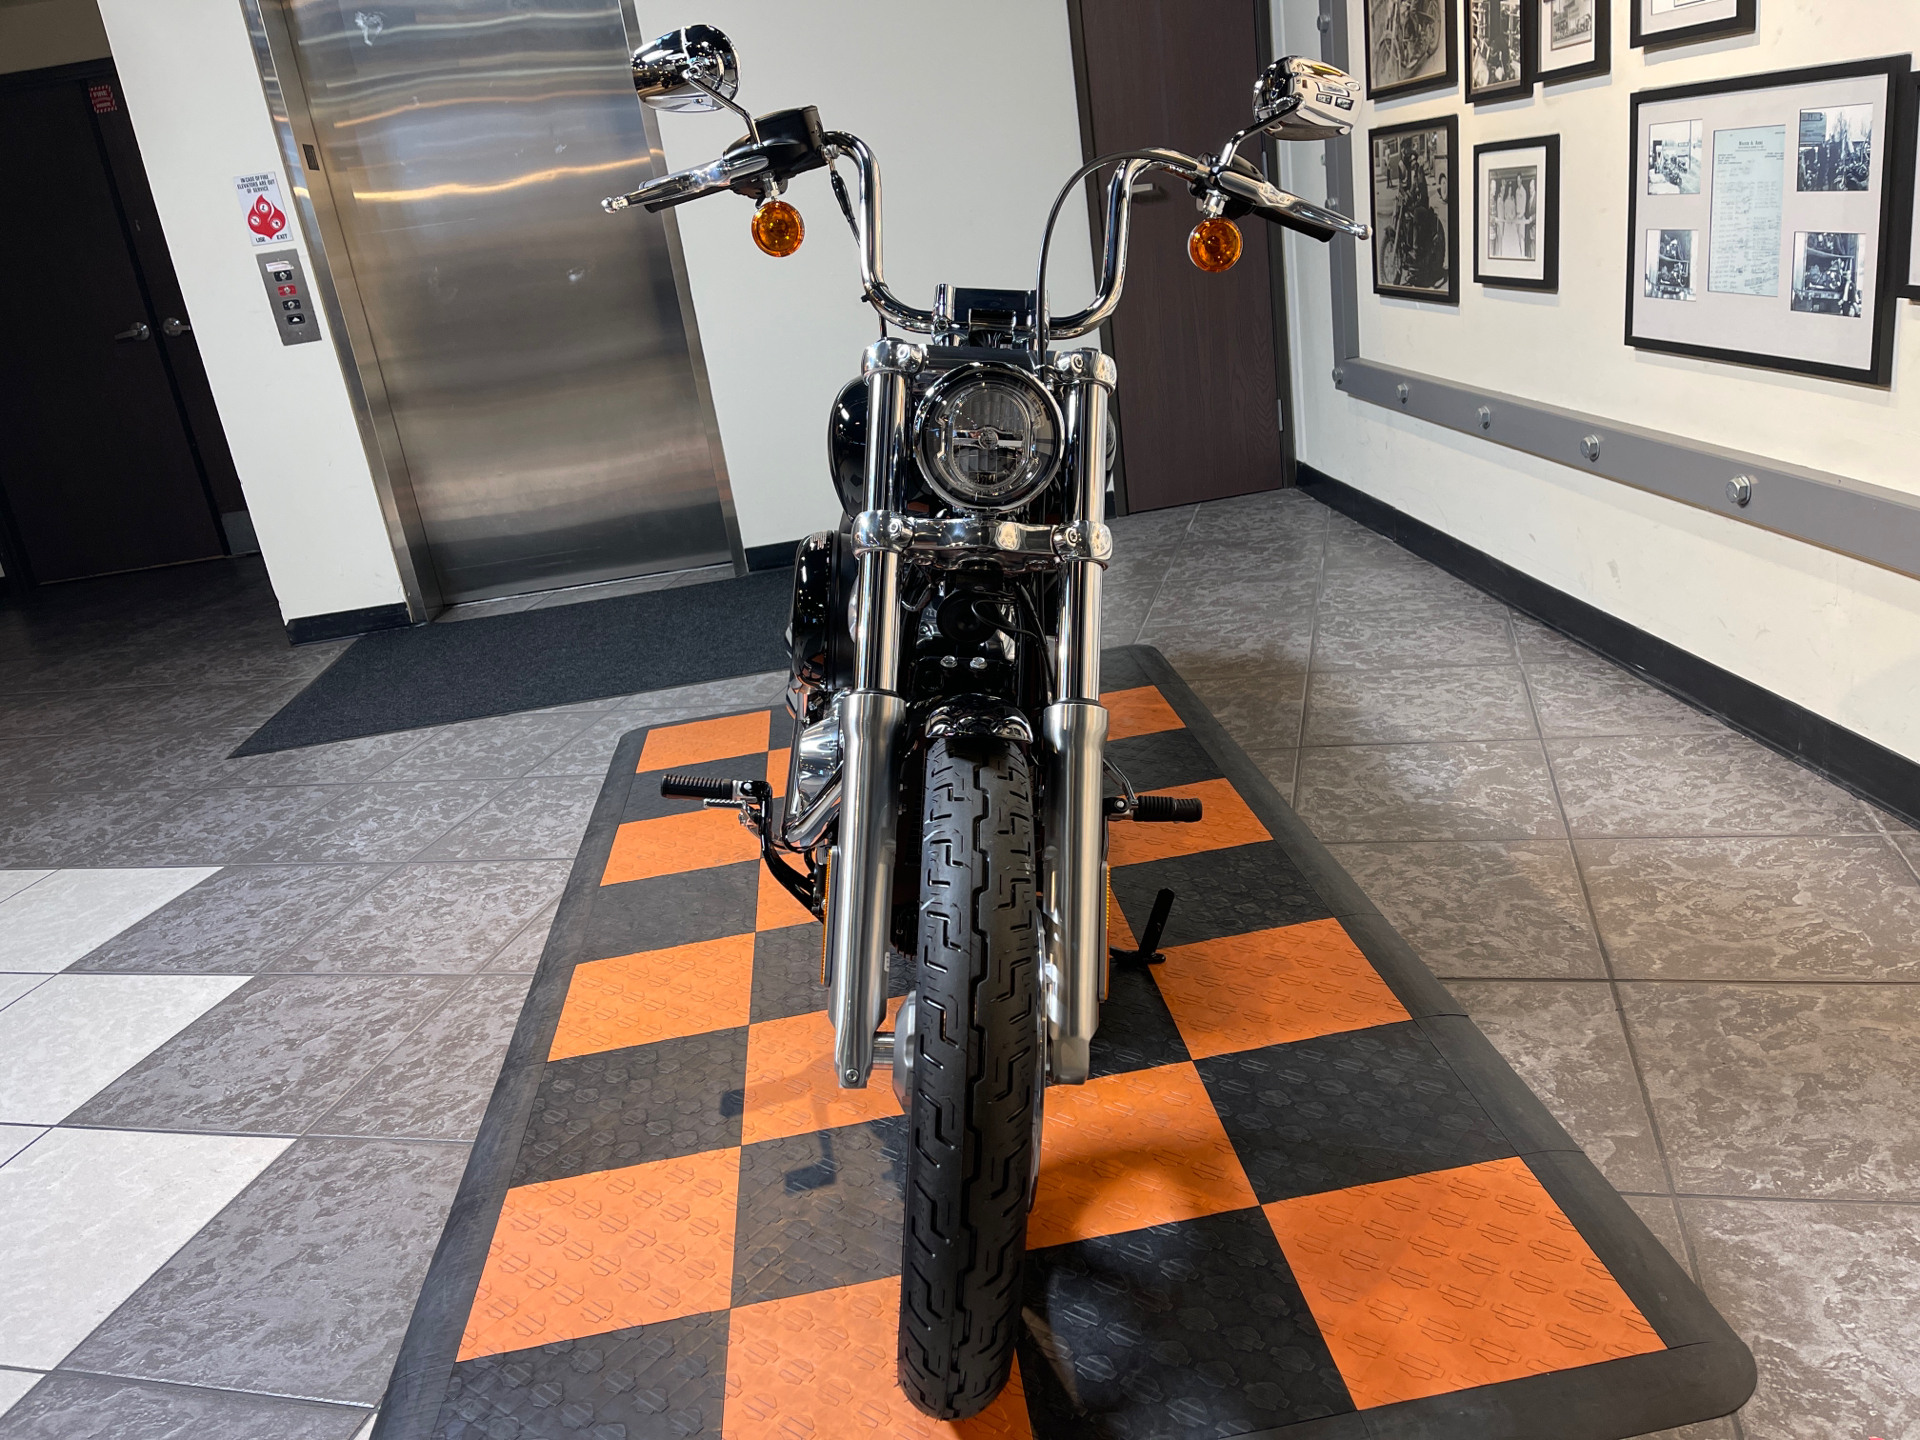 2023 Harley-Davidson Softail® Standard in Baldwin Park, California - Photo 11